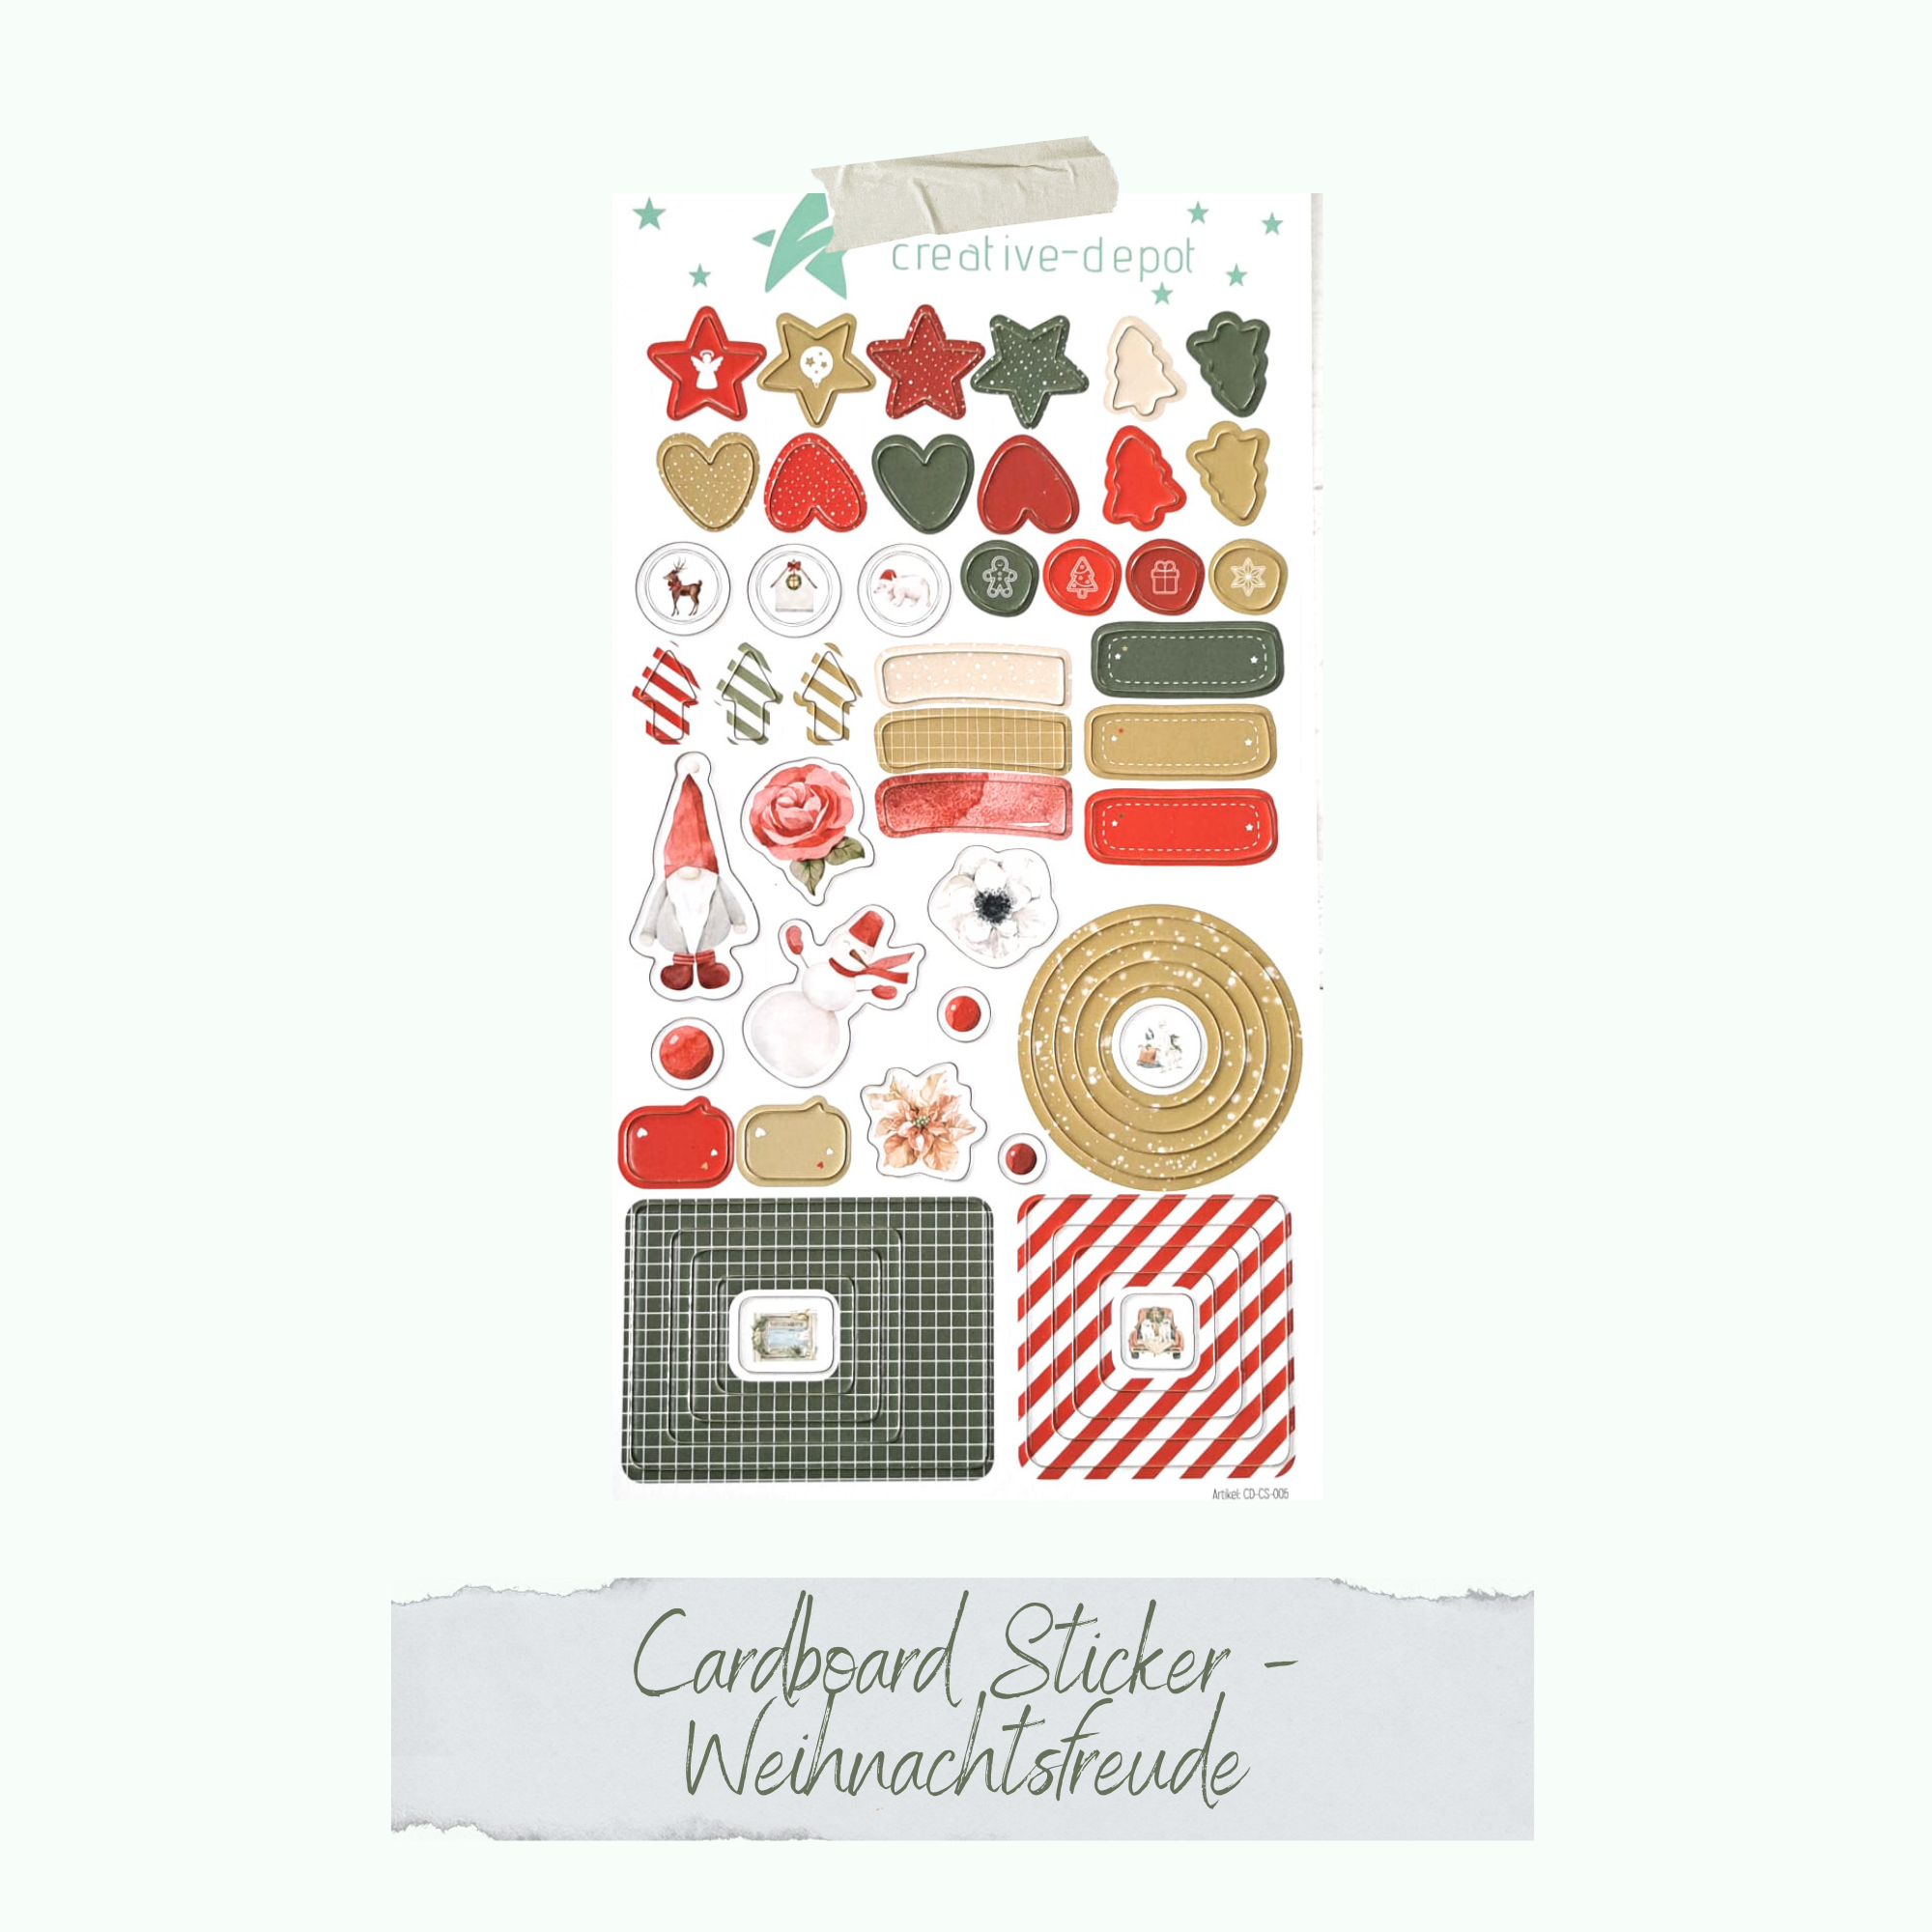 Cardboard Sticker - Weihnachtsfreude